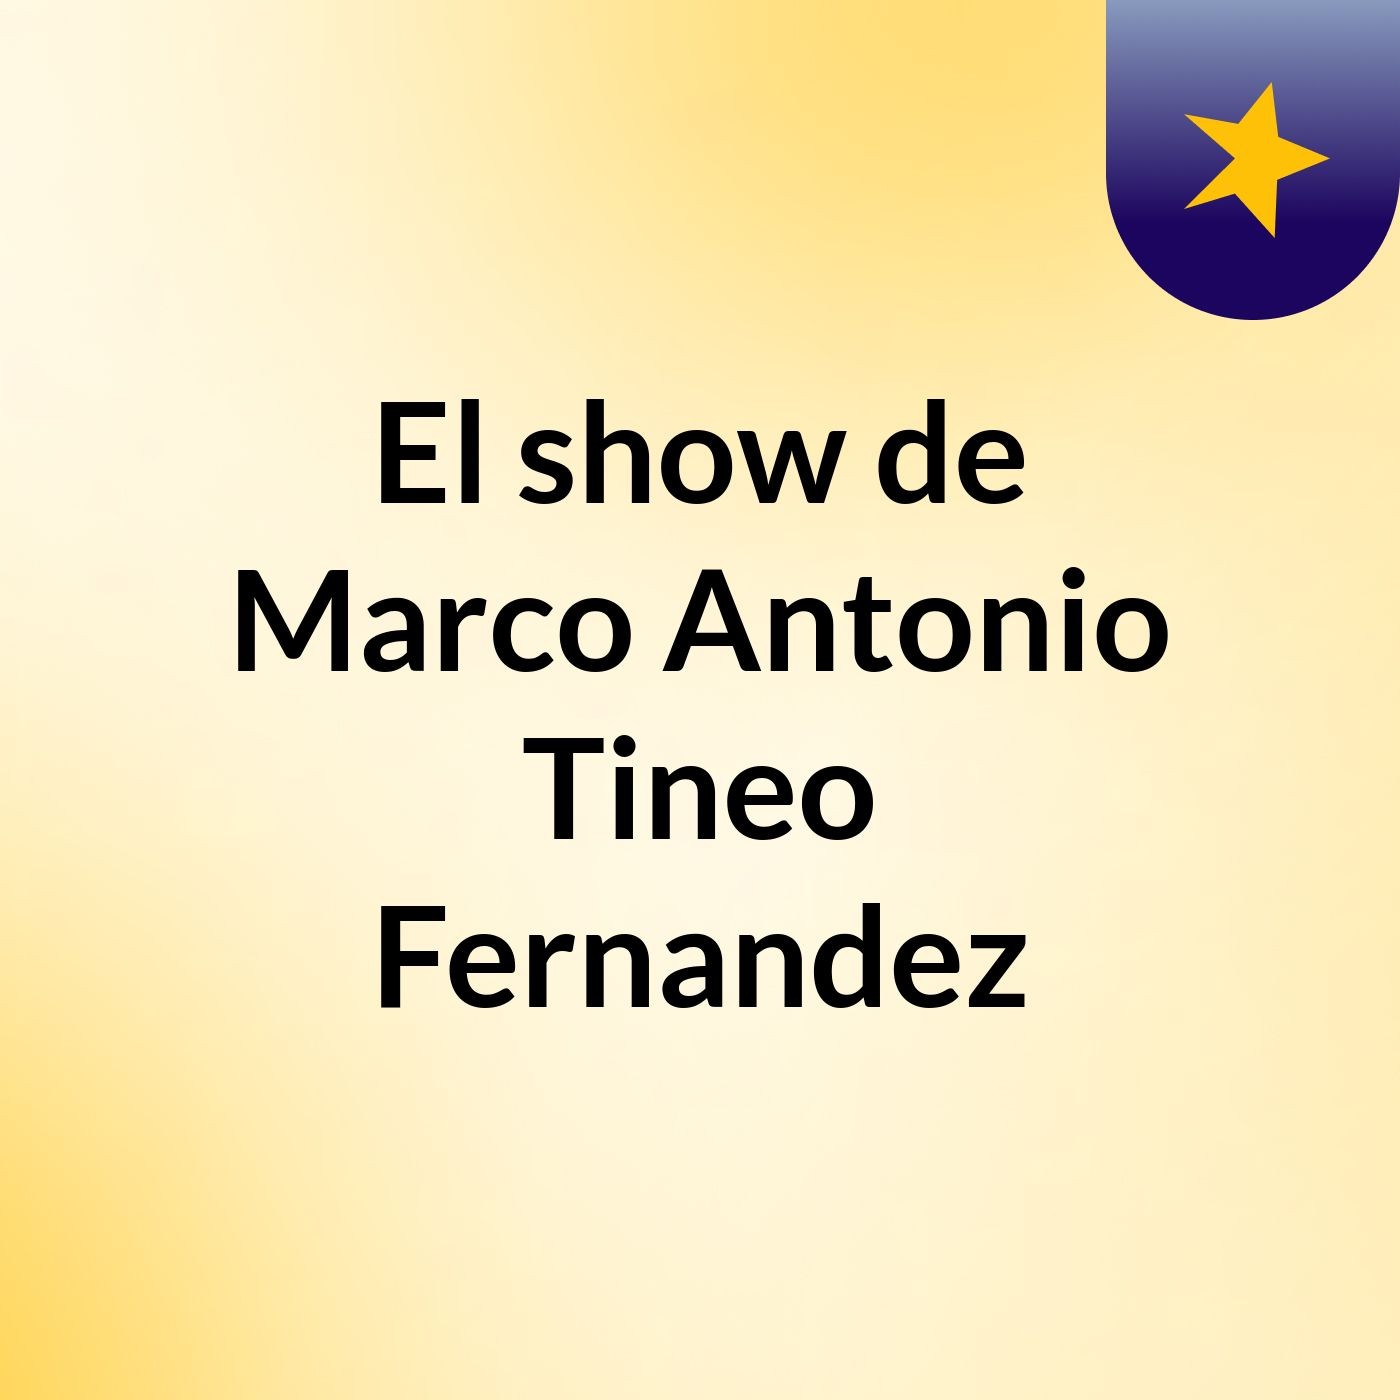 El show de Marco Antonio Tineo Fernandez